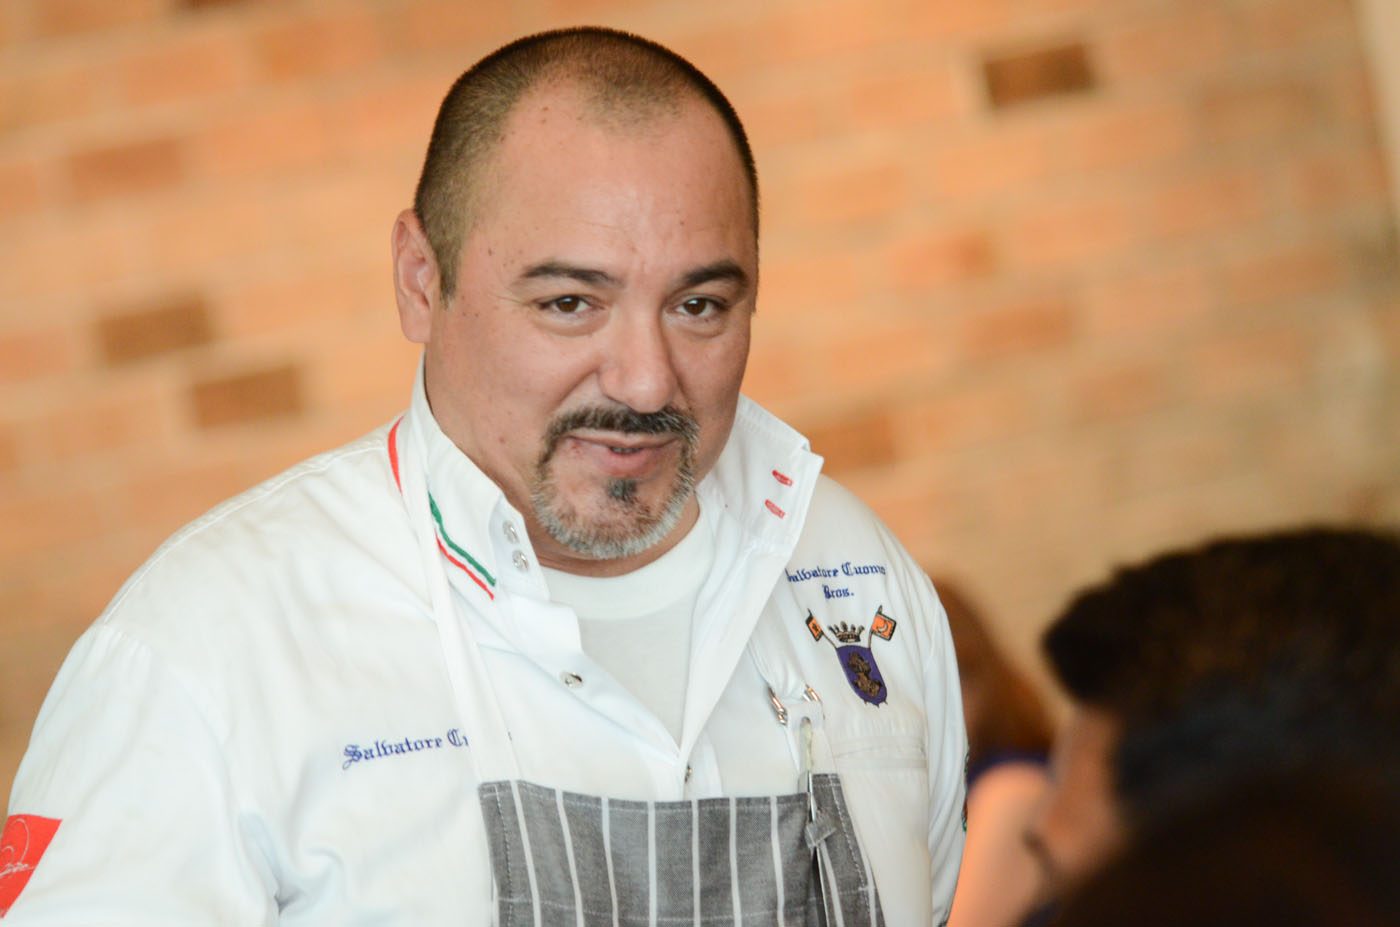 Authentic Neapolitan cuisine: Salvatore Cuomo opens in the PH